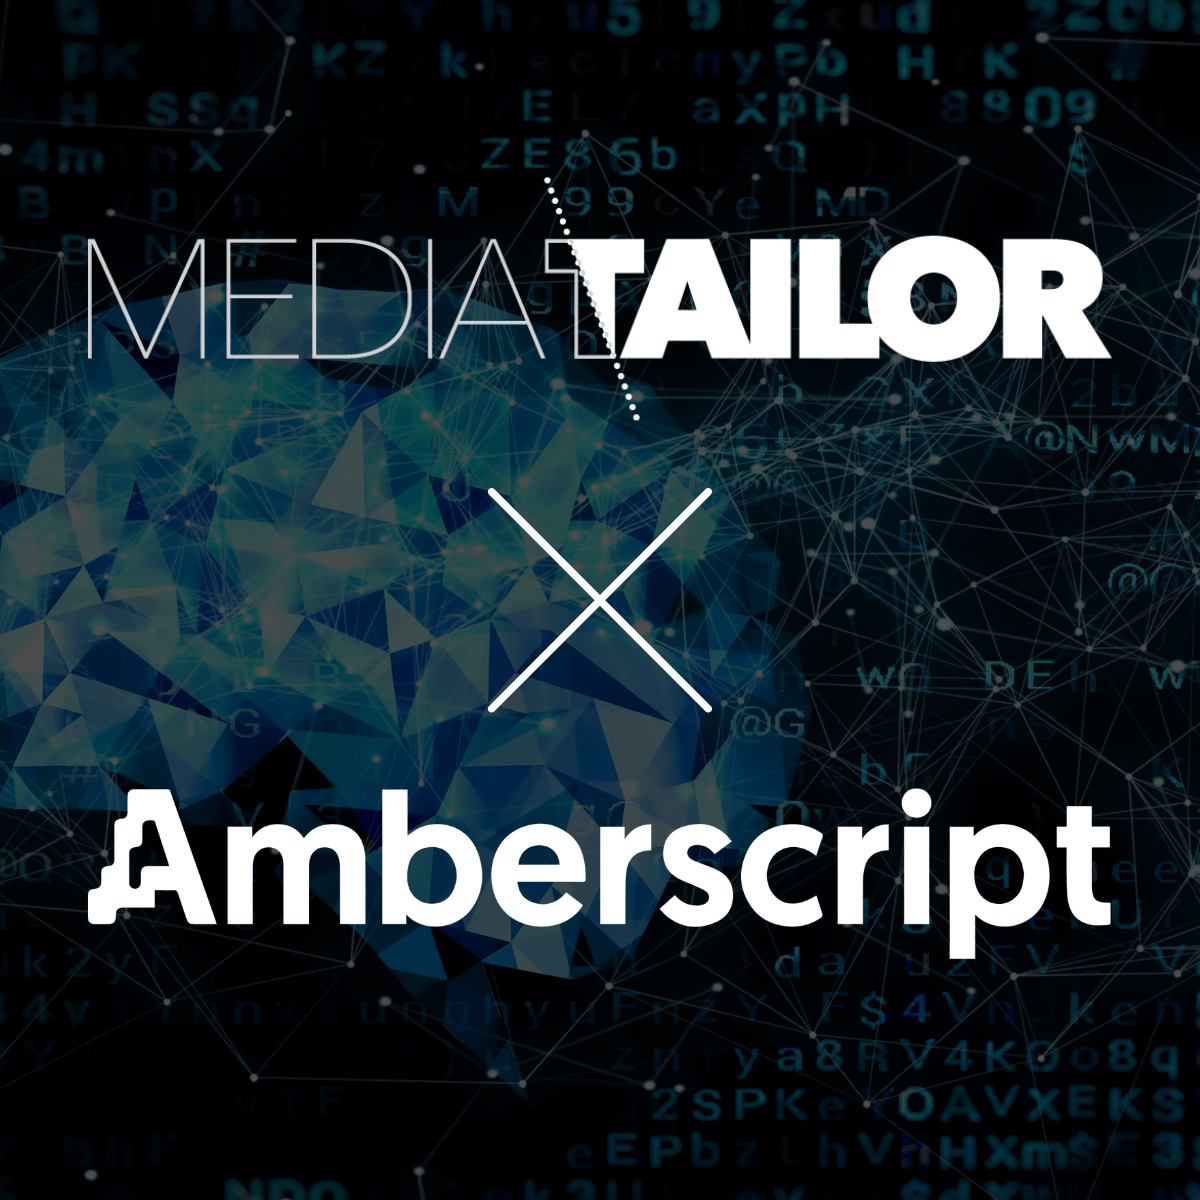 Media Tailor ja Amberscript yhteistyöhön: suomalaisen puheentunnistuksen ja transkription vallankumous!